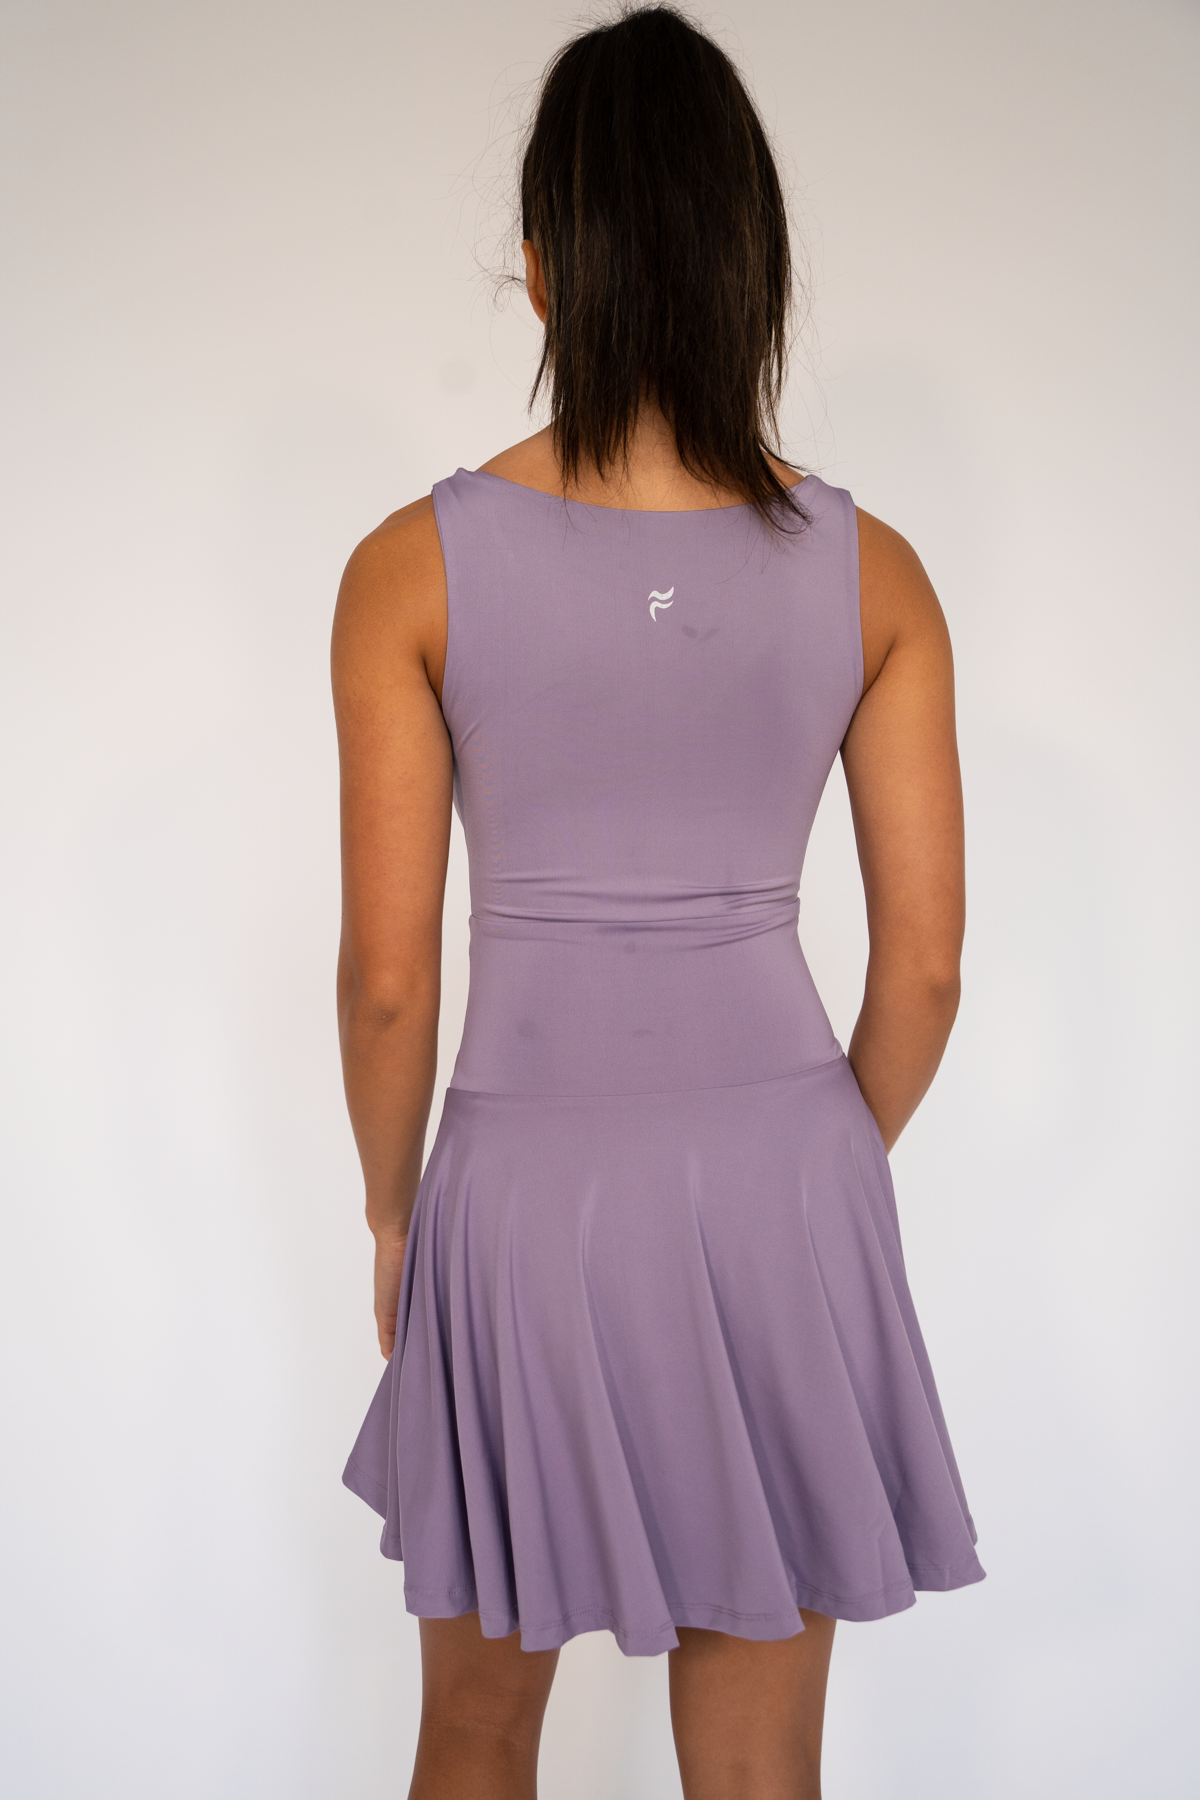 Jadine Flare Dress Heirloom lilac XS S M L XL